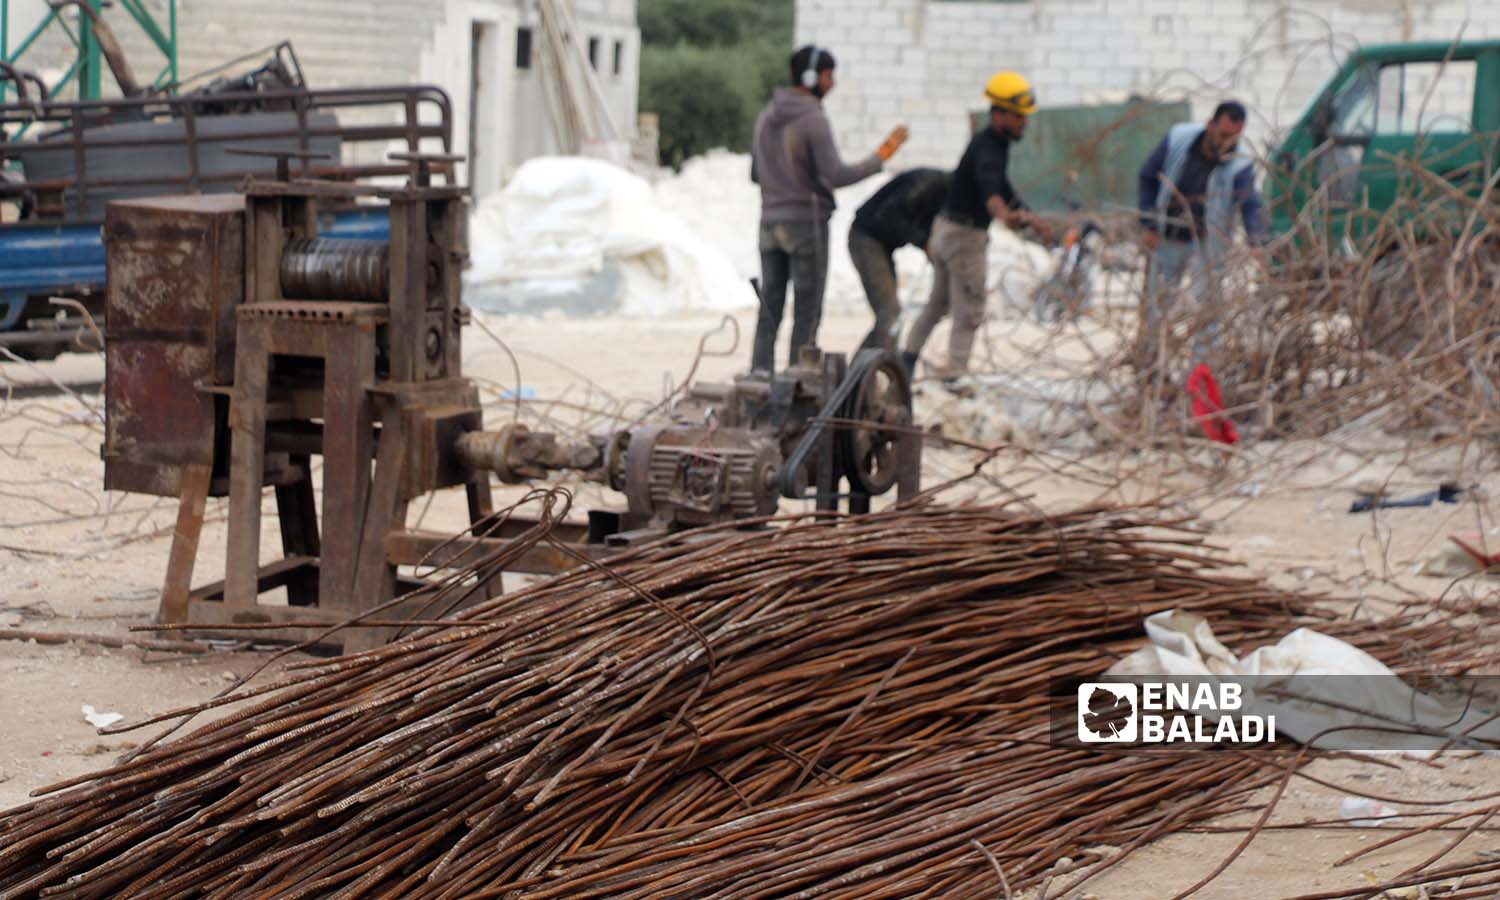 قضبان حديد تم استخراجها من الأبنية المدمرة بفعل الزلزال  بقعل الزلزال لإعادة تدويرها واستخدامها في سلقين بريف إدلب- 30 نيسان 2023(عنب بلدي- إياد عبد الجواد)